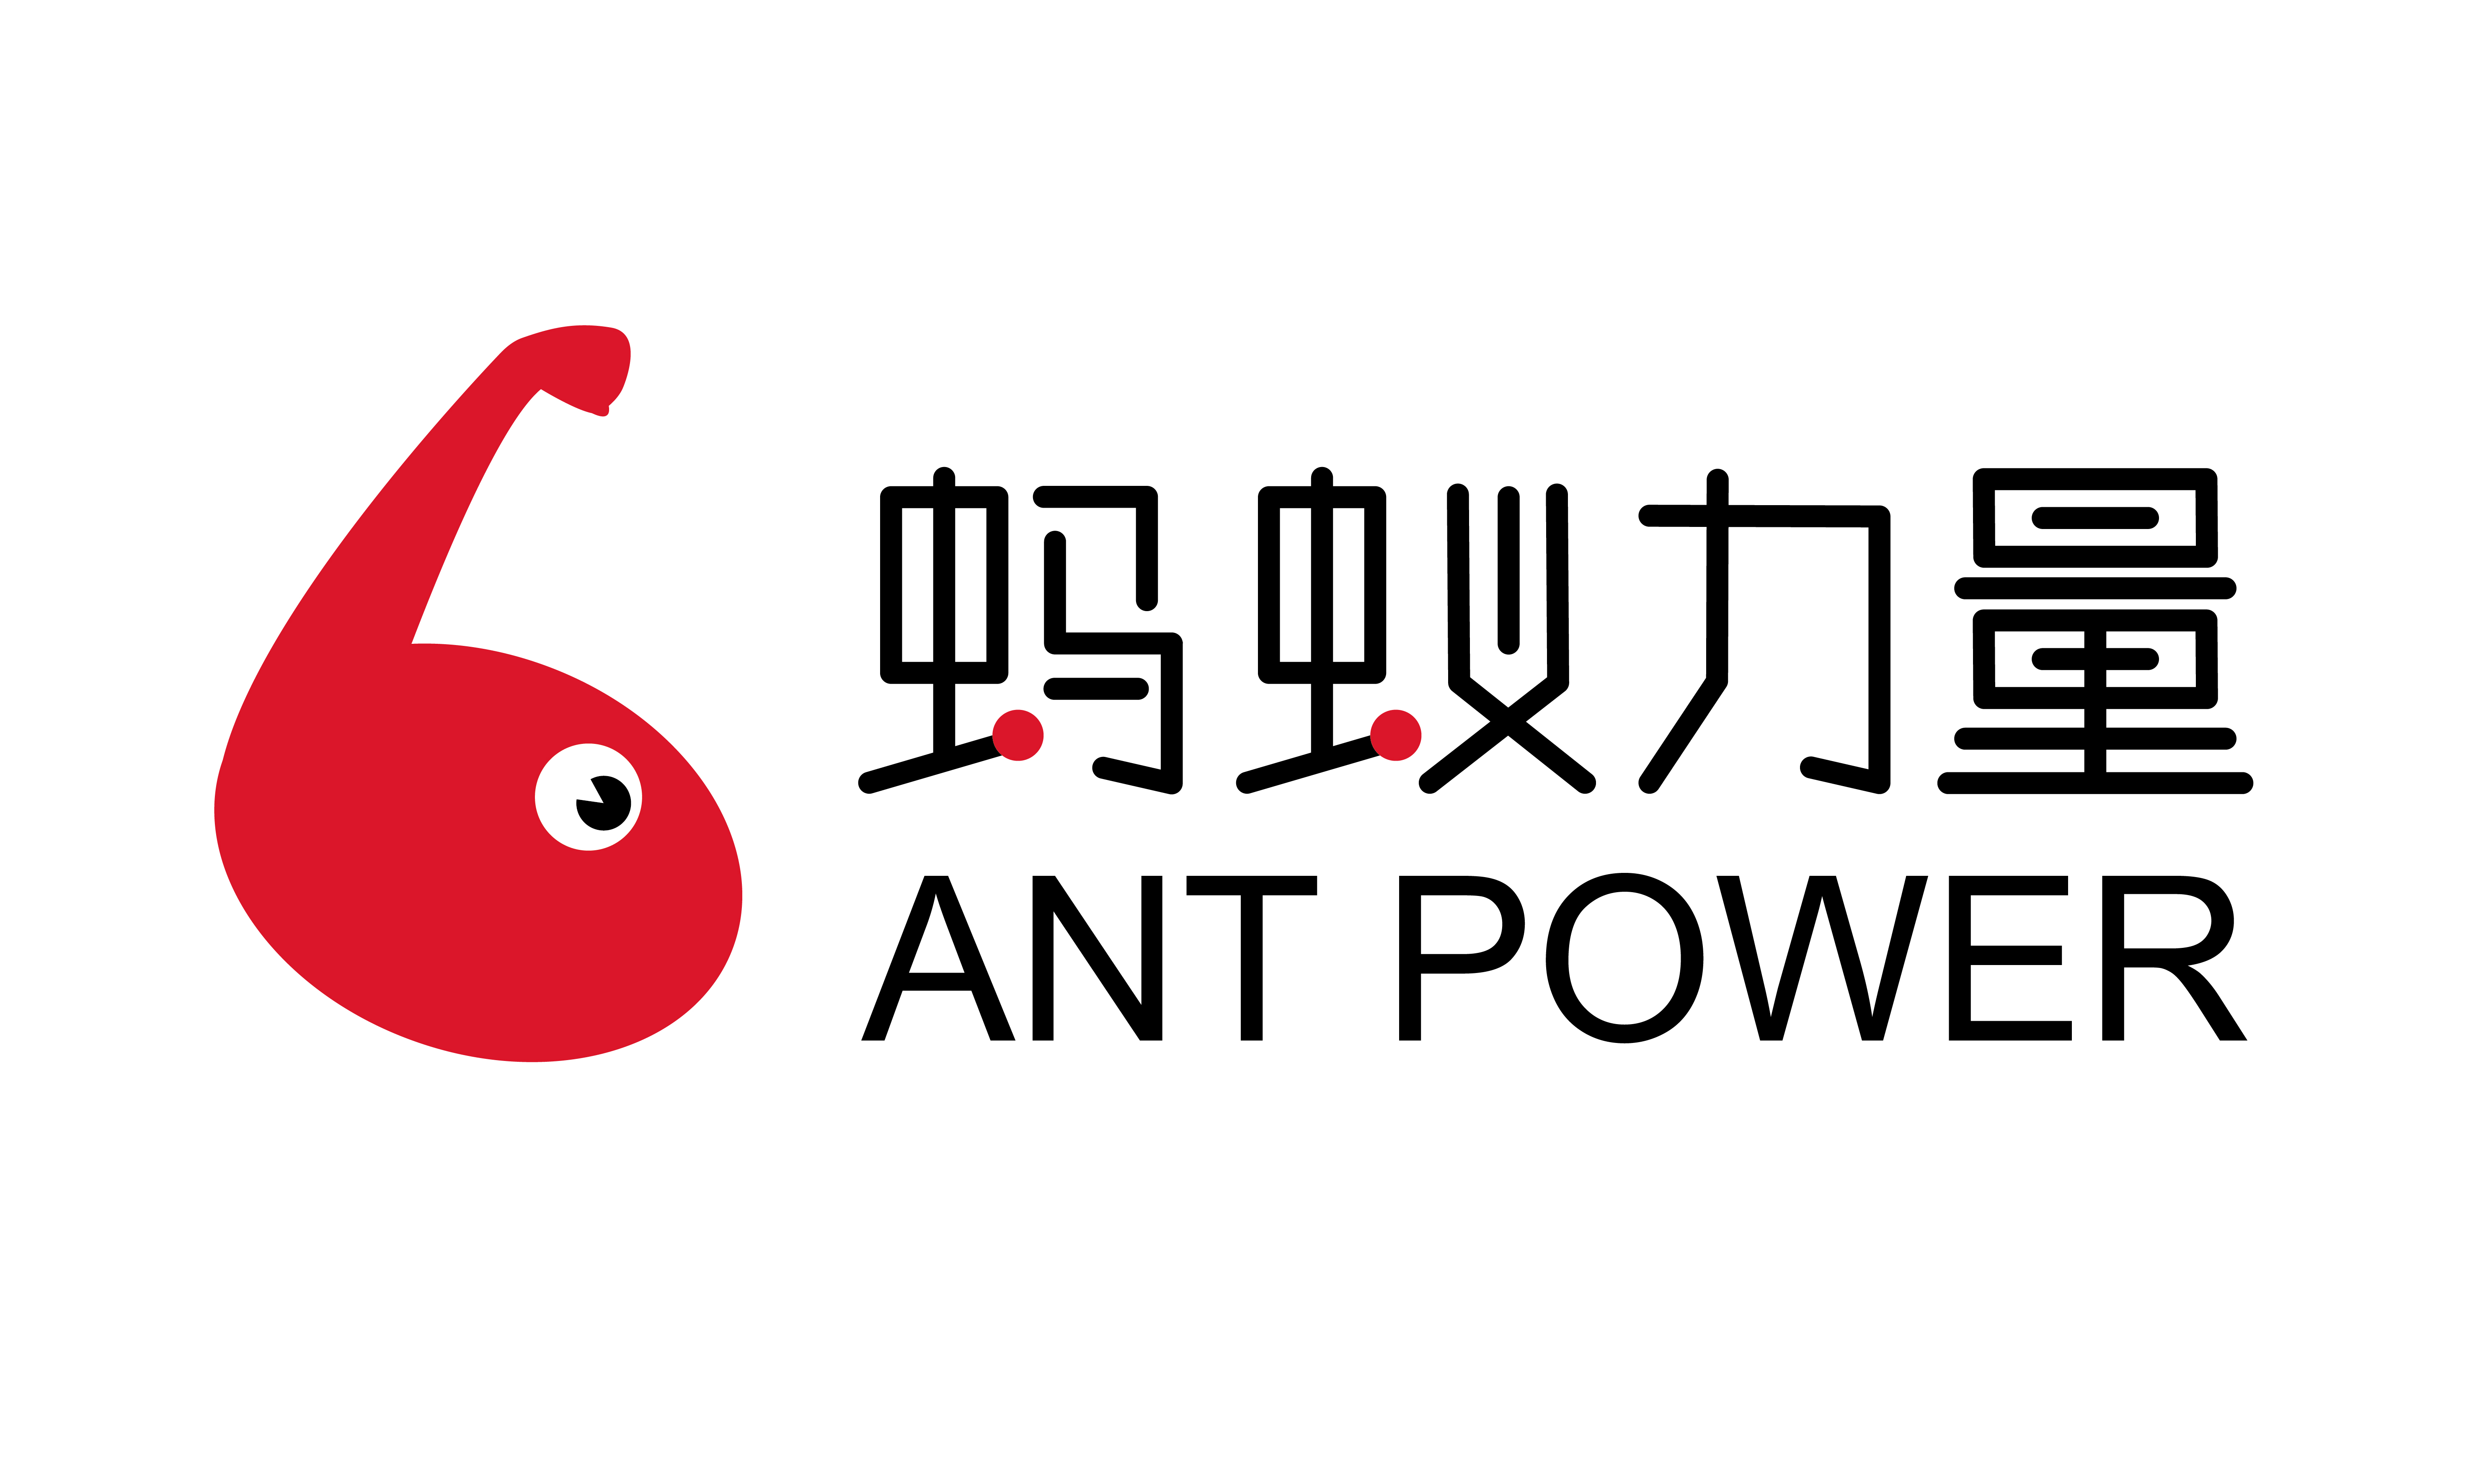 蚂蚁logo设计图案大全图片